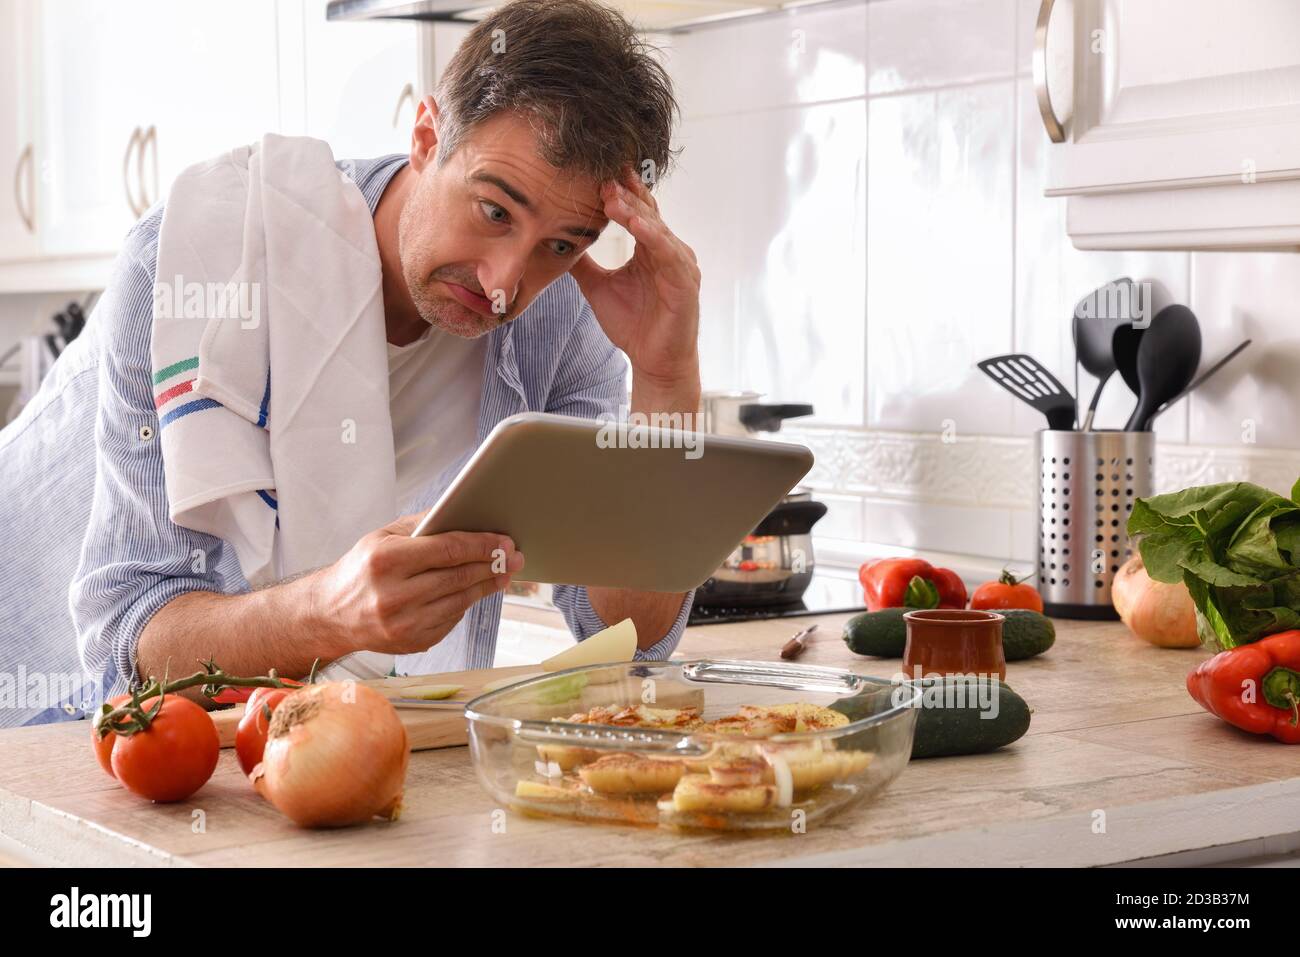 Anfänger Koch Blick auf eine Tablette mit einem unfähigen Gesicht Seinen Ellbogen auf der Küchenbank auflegen und seine Stirn berühren Stockfoto